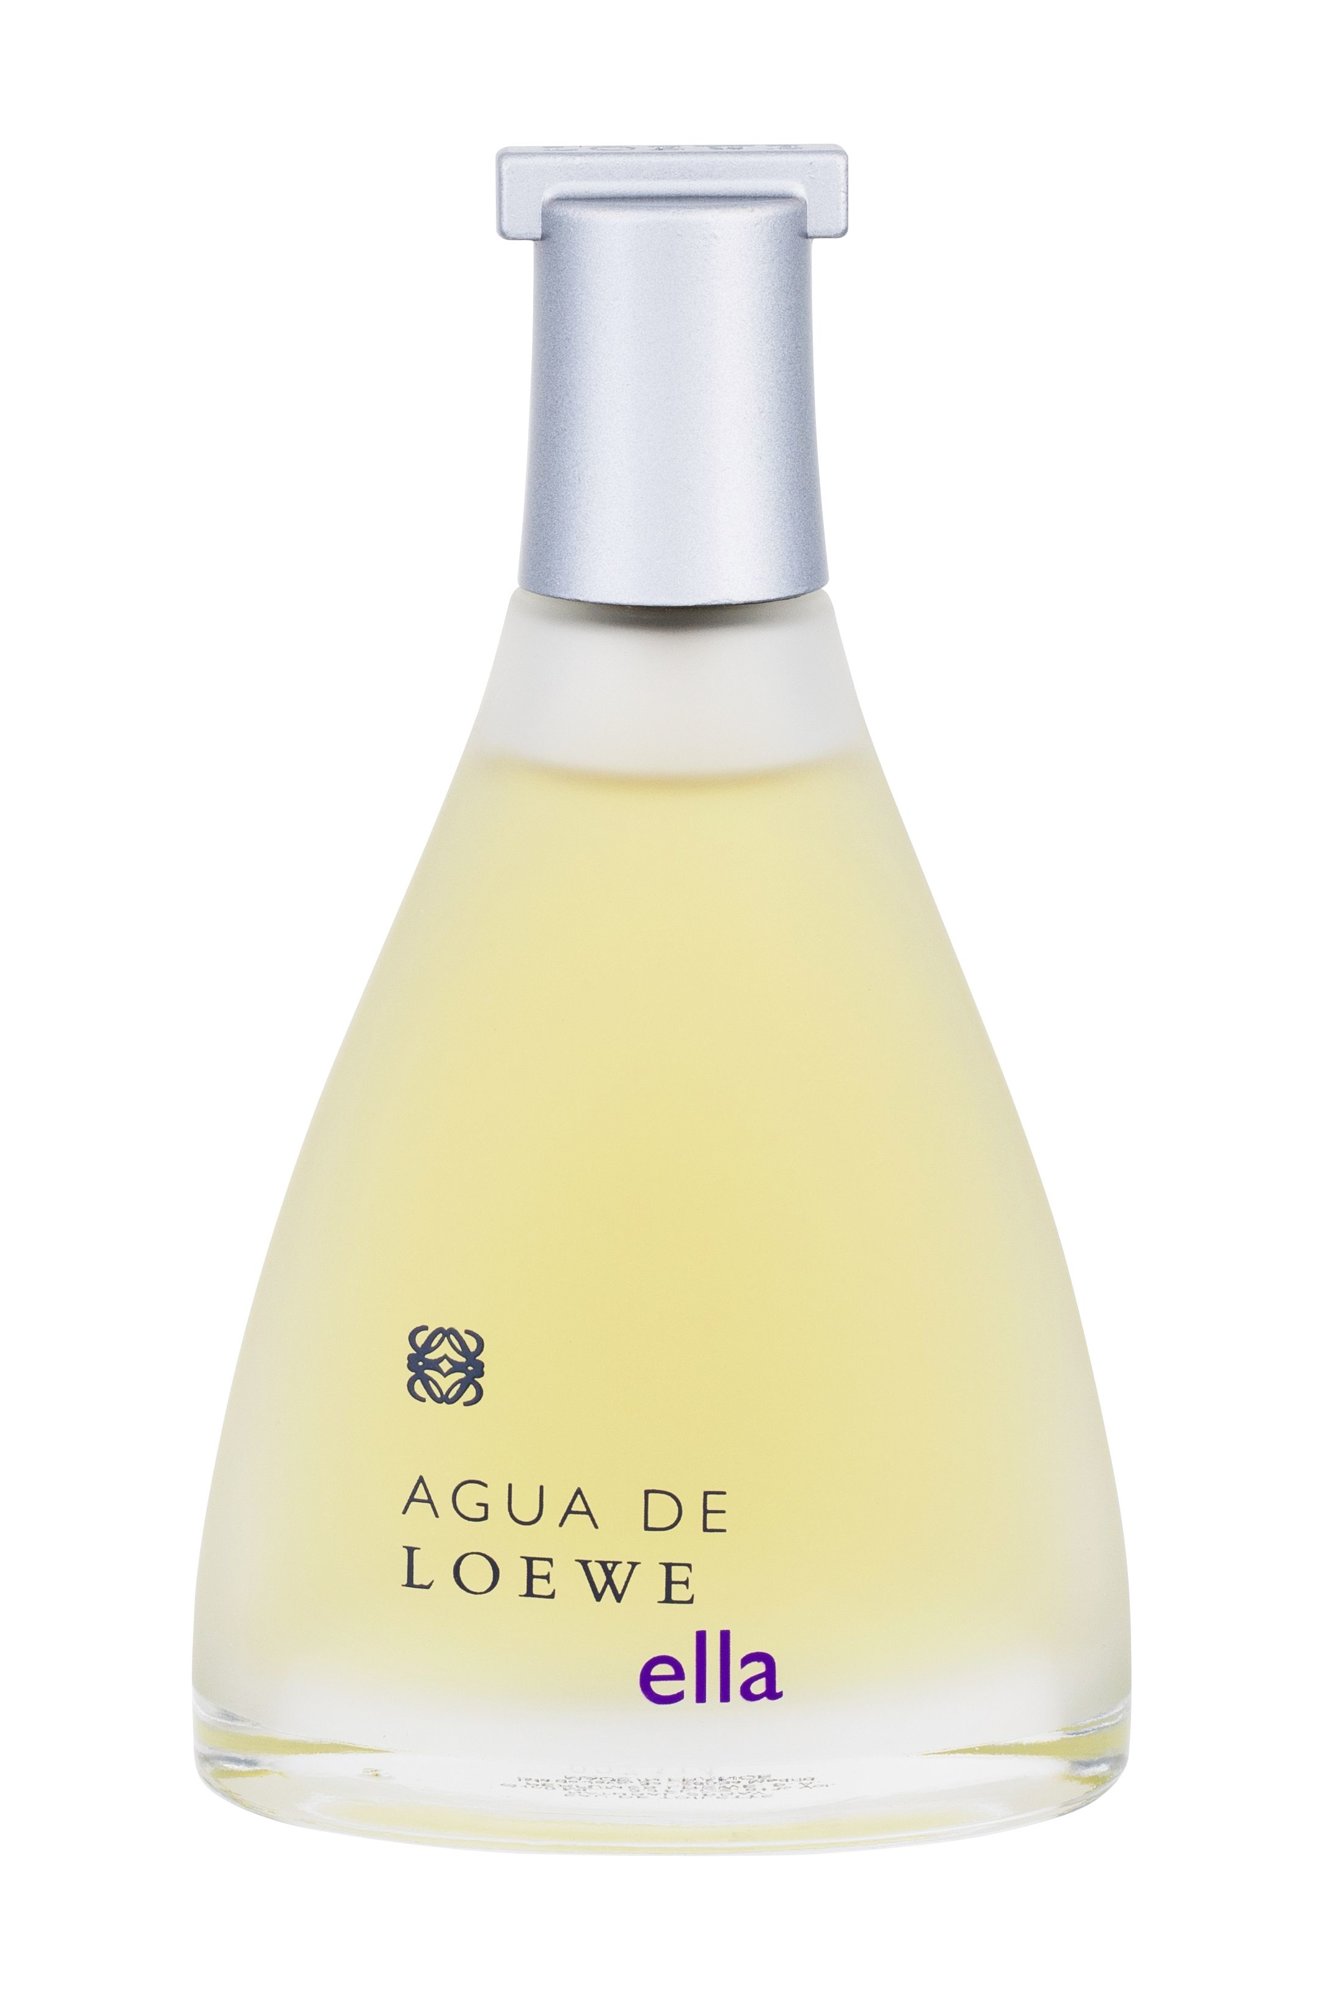 Loewe Agua de Loewe Ella